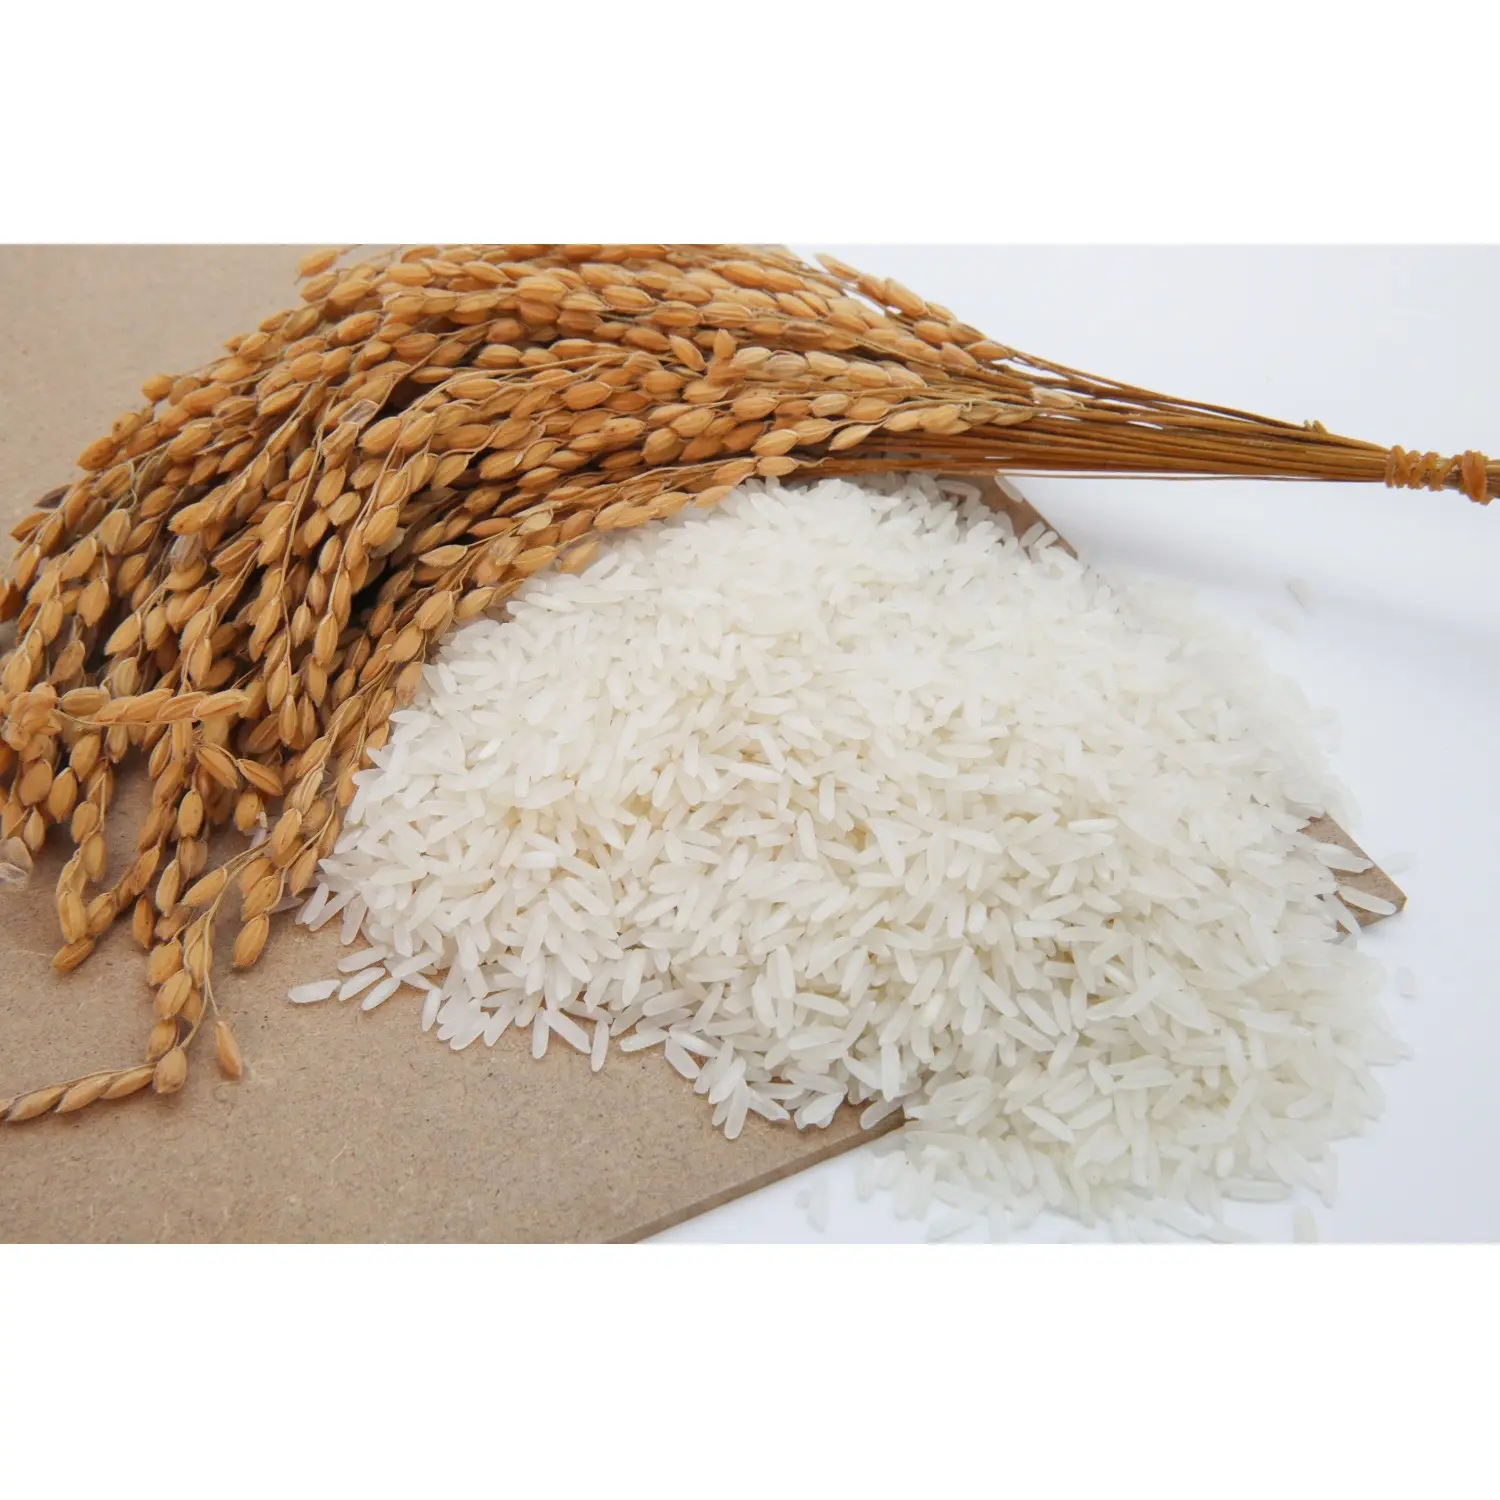 الجملة الهندي IR 64 الأرز الياسمين أرز أبيض طويل الحبة أرز طويل مسلوق بالزبدة 5% كسر